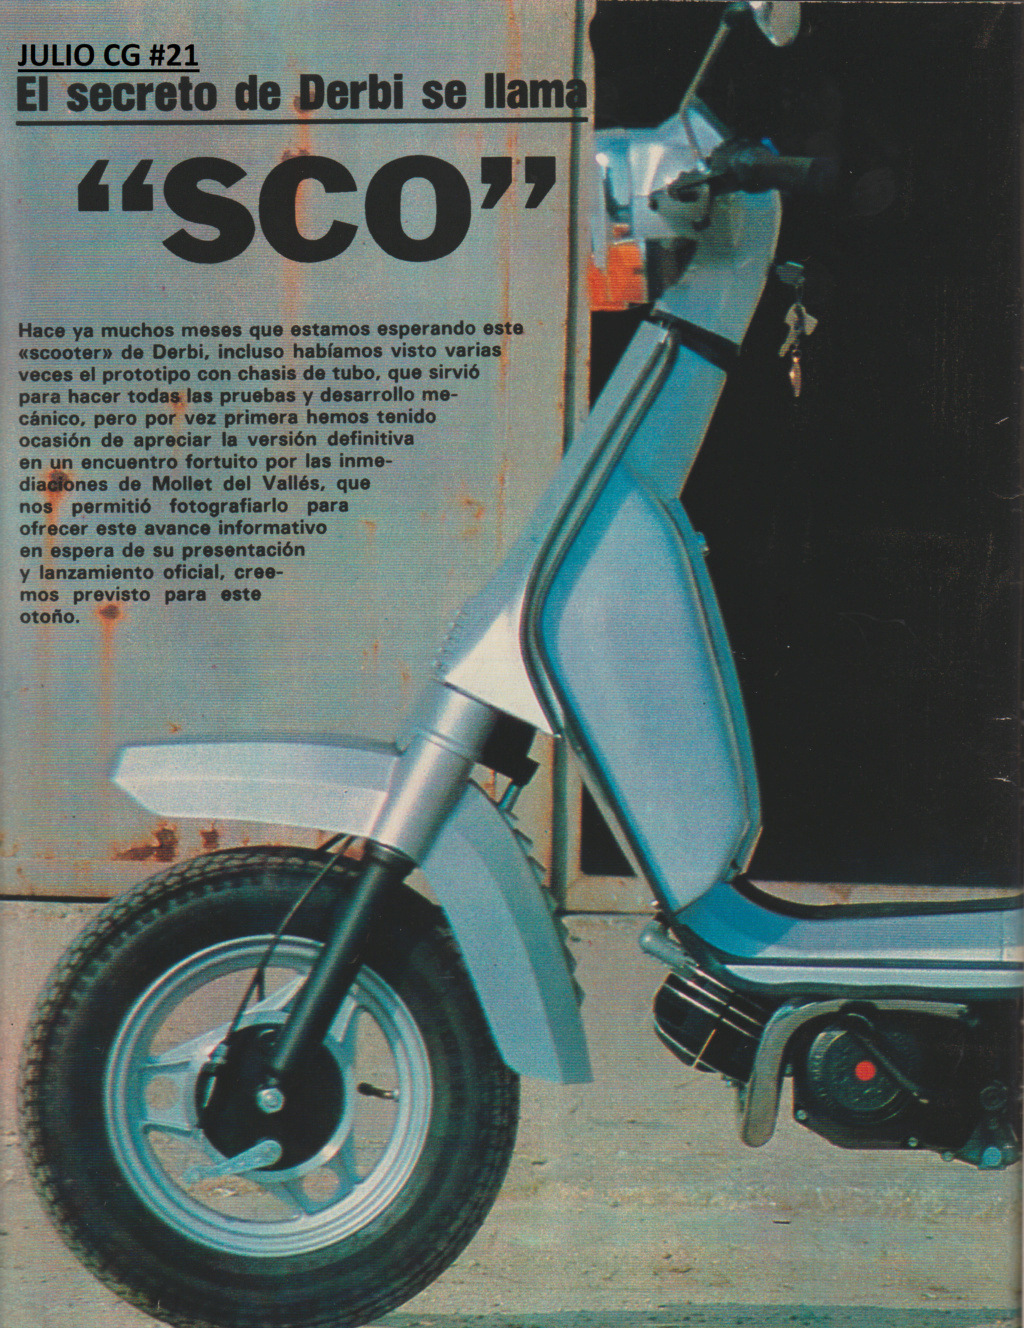  Presentacion en Motociclismo, Derbi SCO 75 Escze451